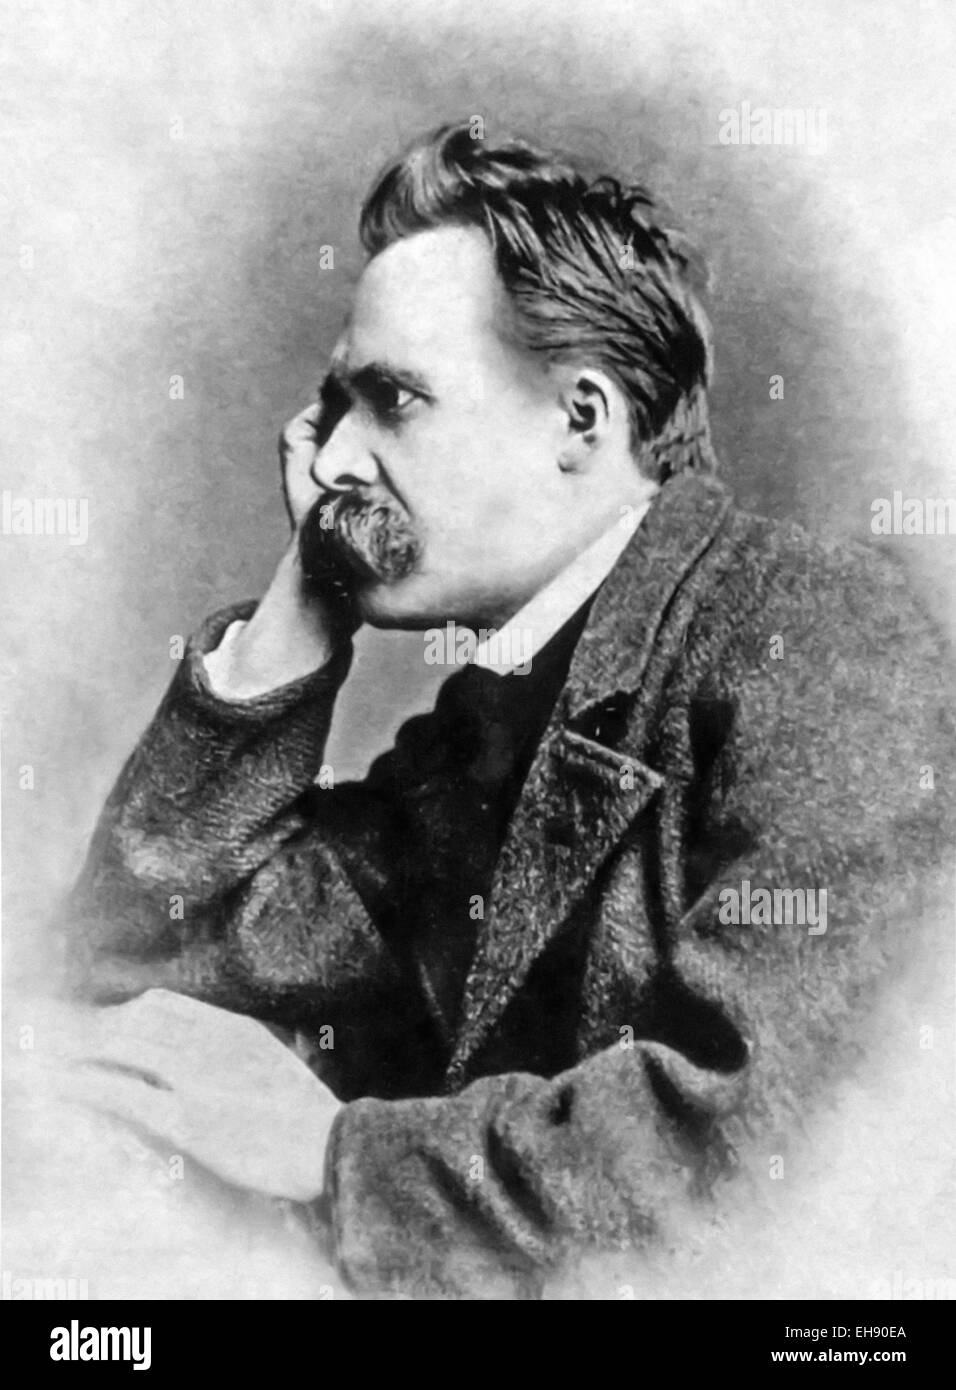 Friedrich Wilhelm Nietzsche (1844-1900), philosophe allemand, poète et écrivain. Voir la description pour plus d'informations. Banque D'Images